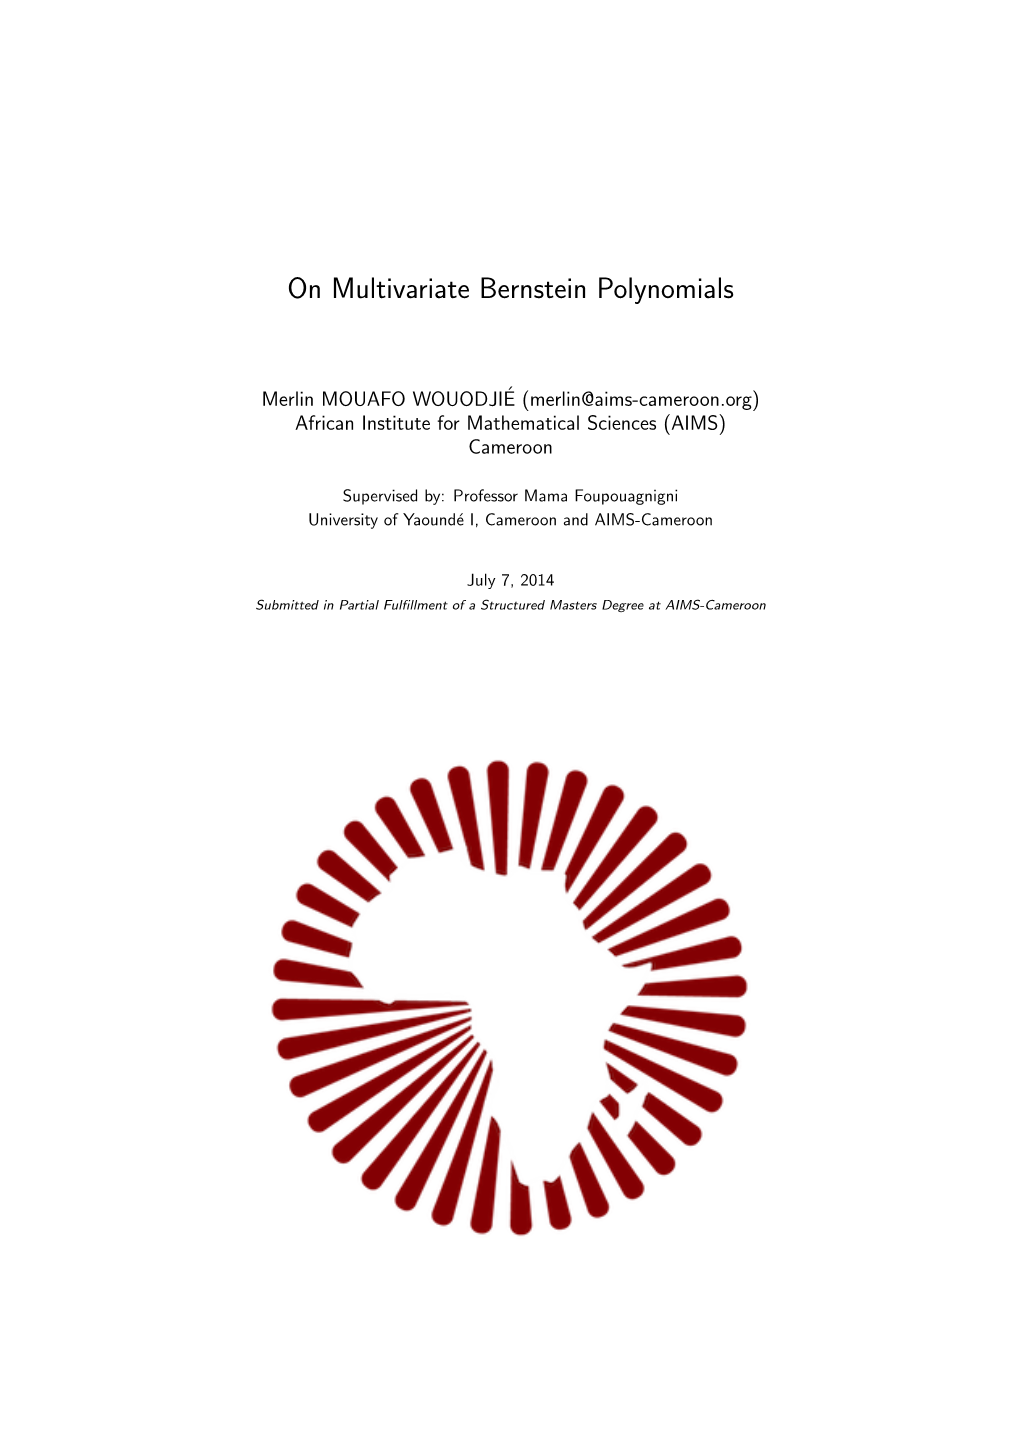 On Multivariate Bernstein Polynomials